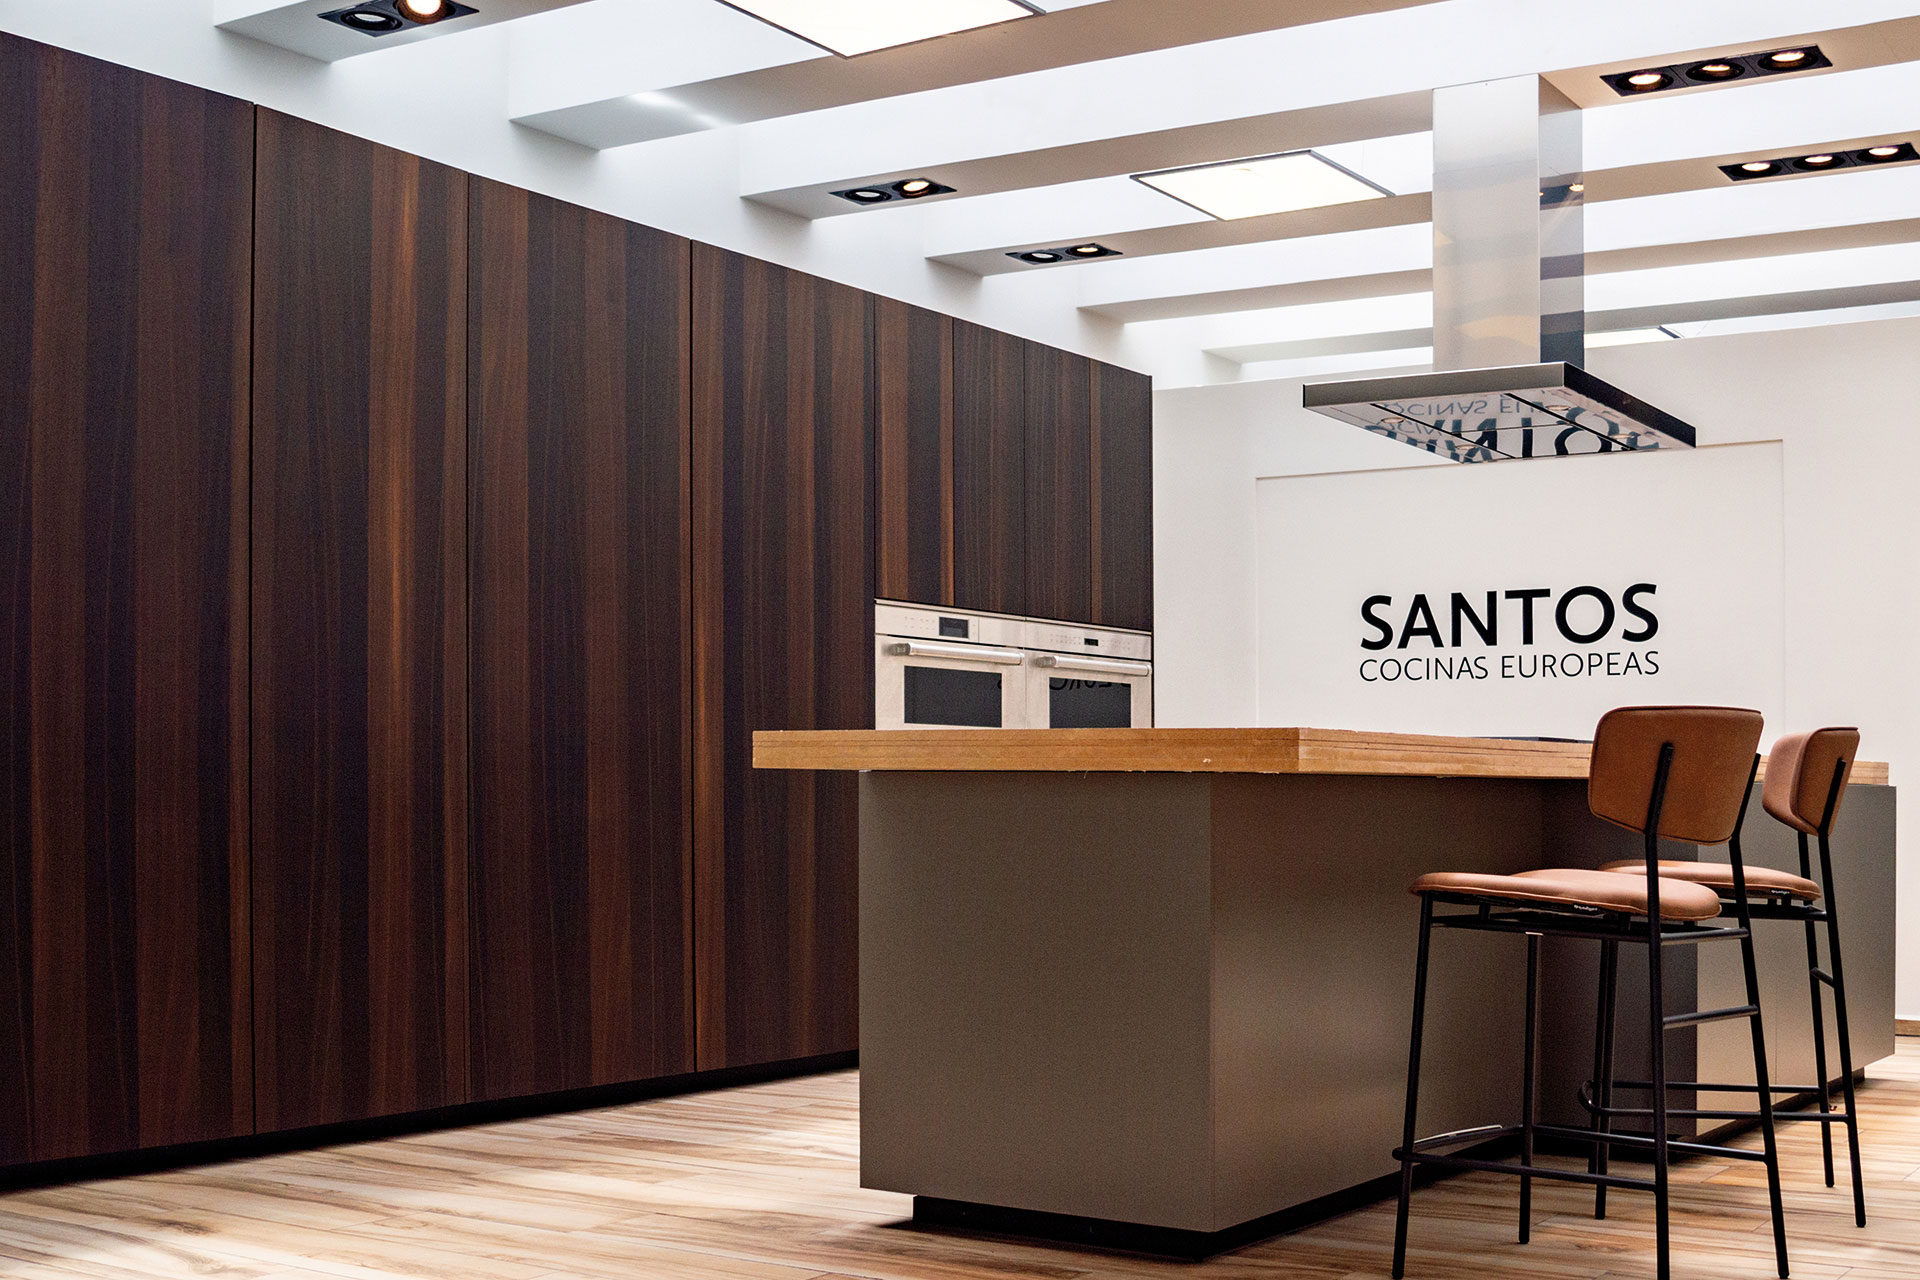 Santos Guadalajara, nieuwe exclusieve Santos keukenwinkel in Mexico